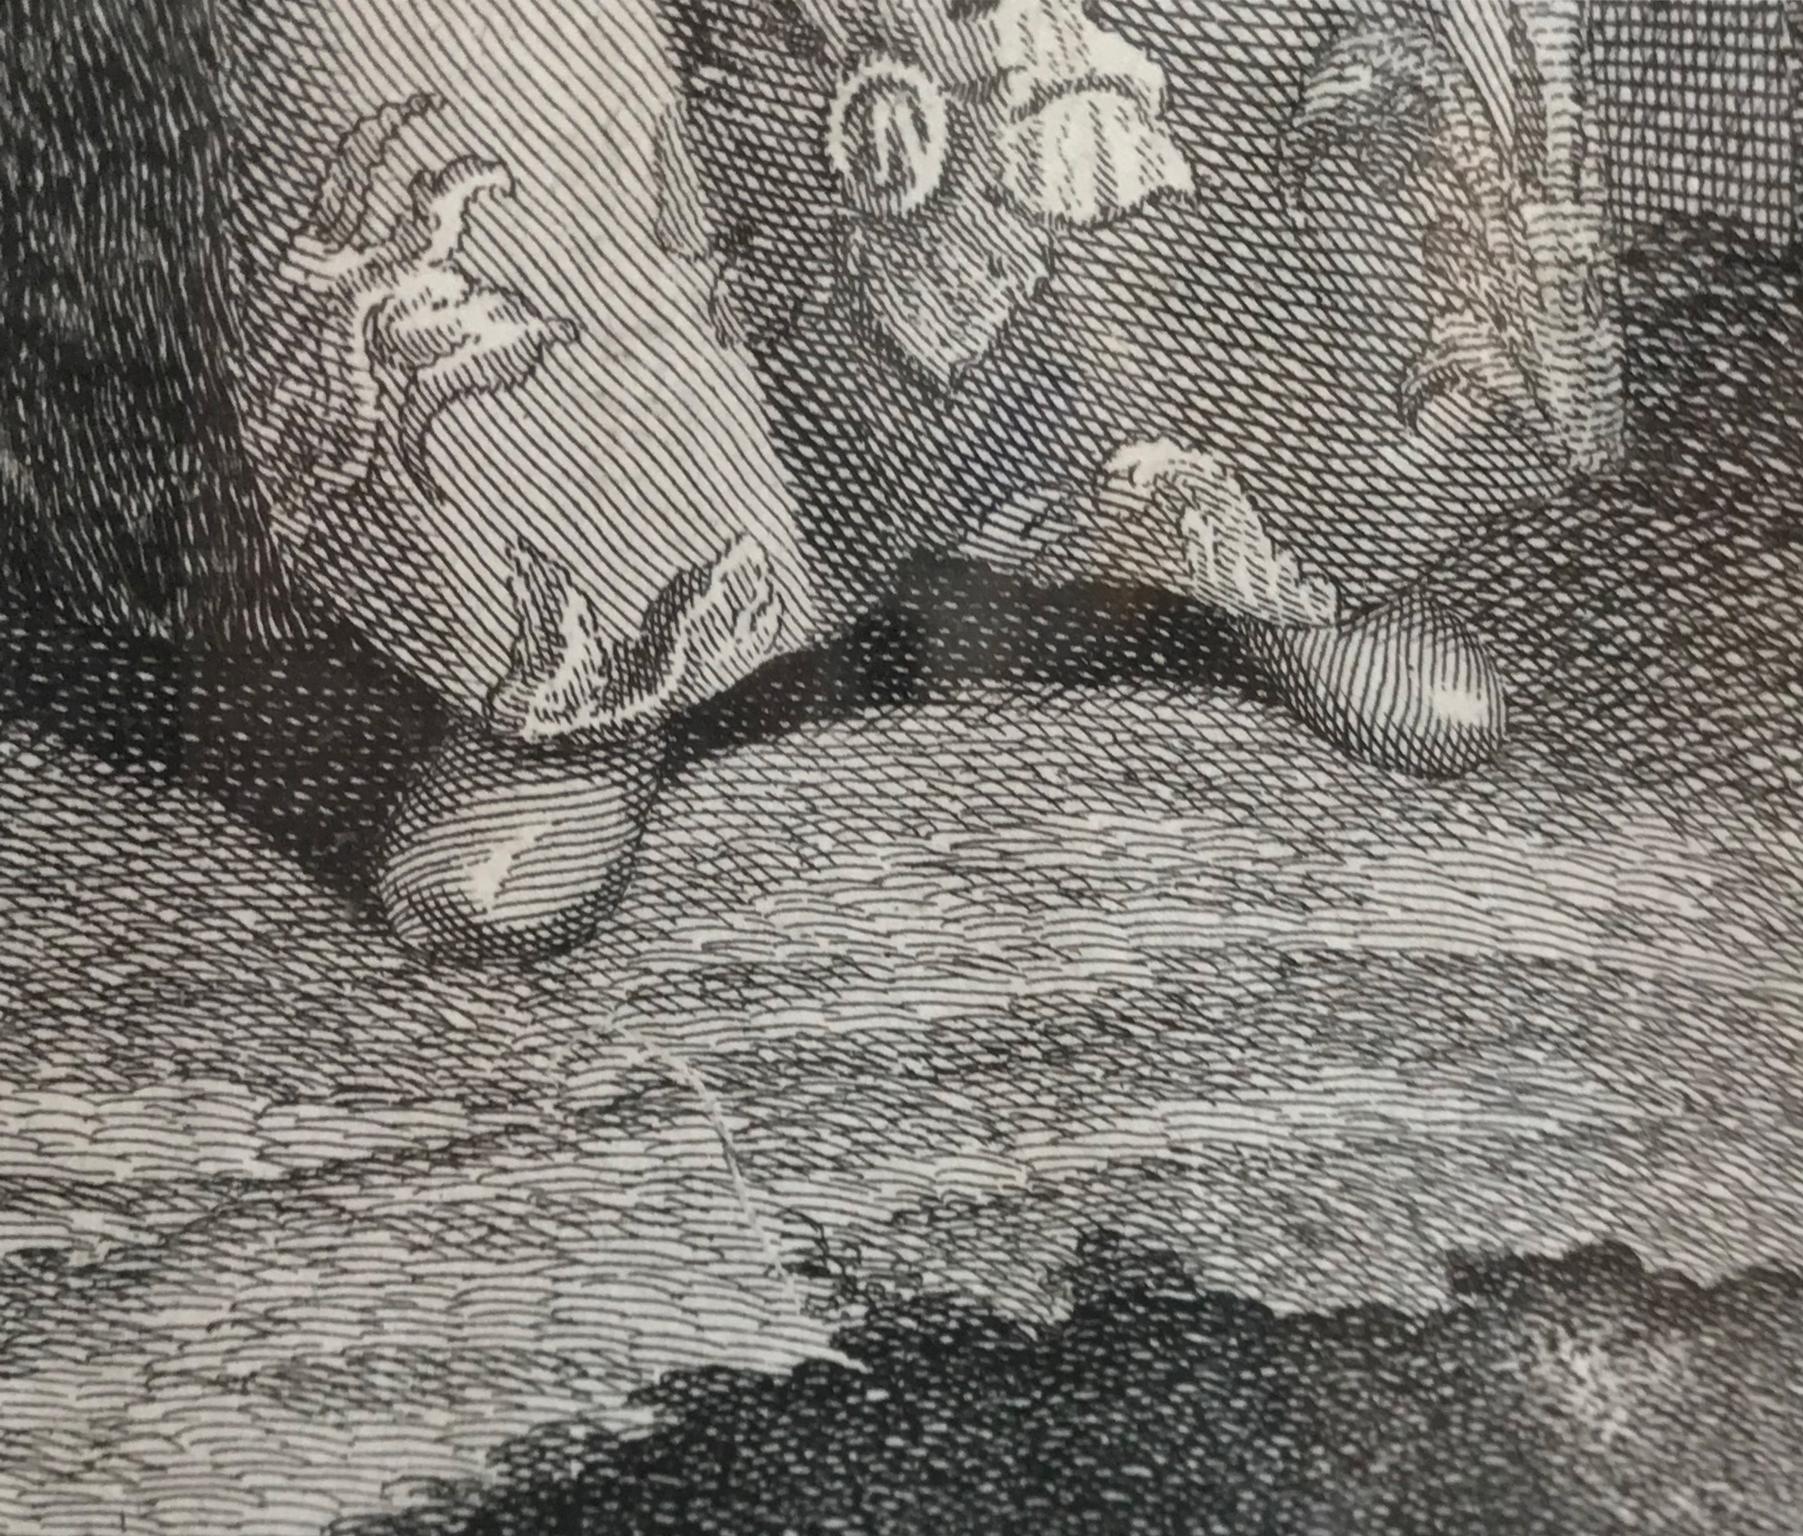 AFTER JEAN BAPTISTE VANMOUR Set of Twelve 18th Century Engravings - 1714, Paris. 6